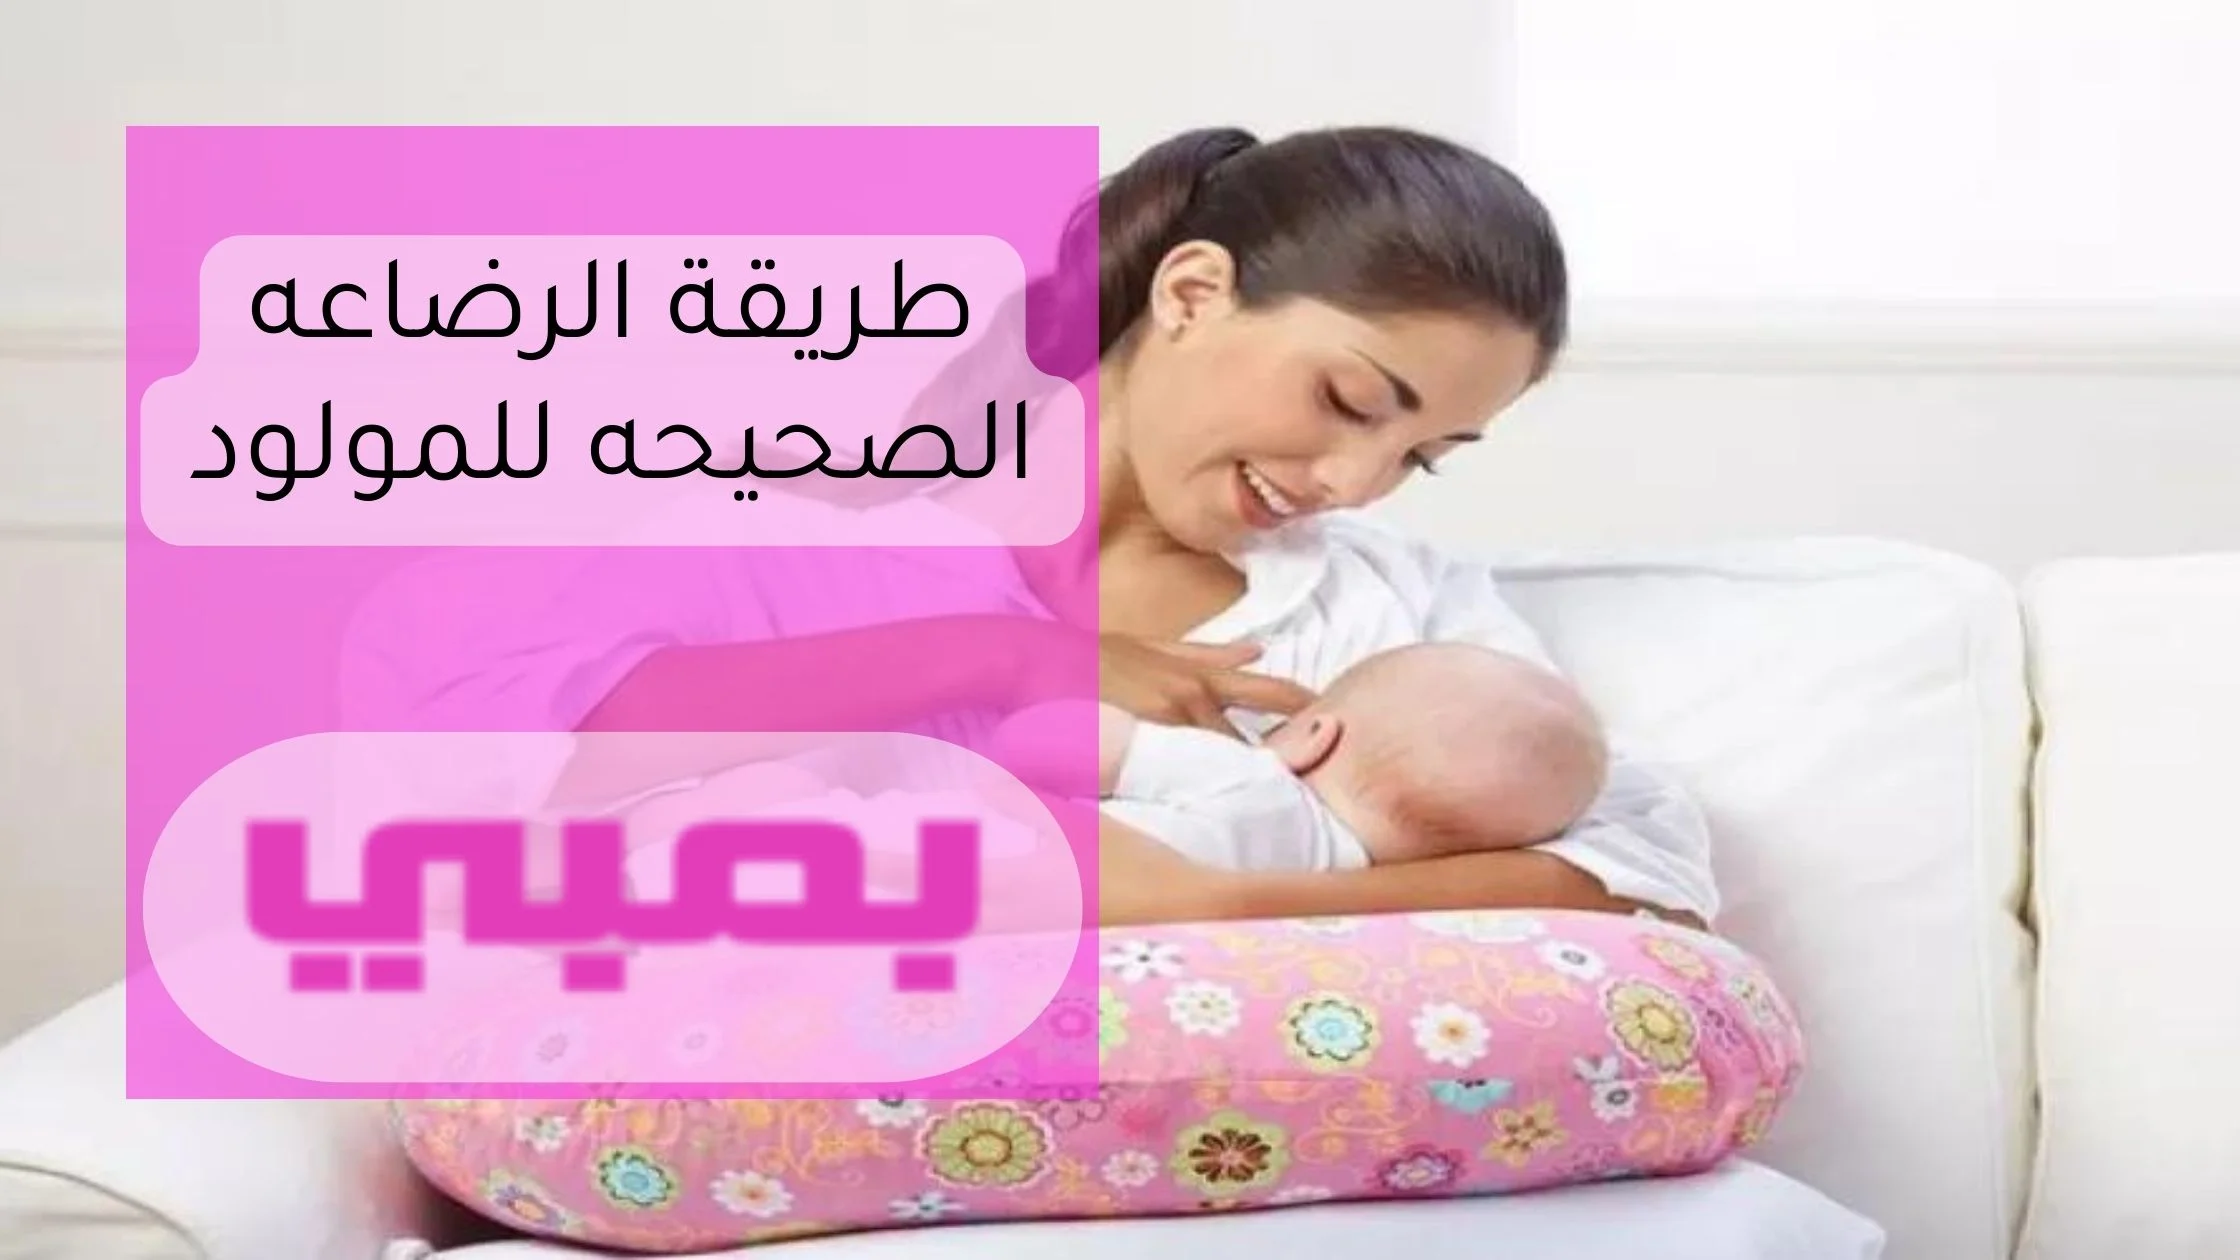 طريقة الرضاعه الصحيحه للمولود